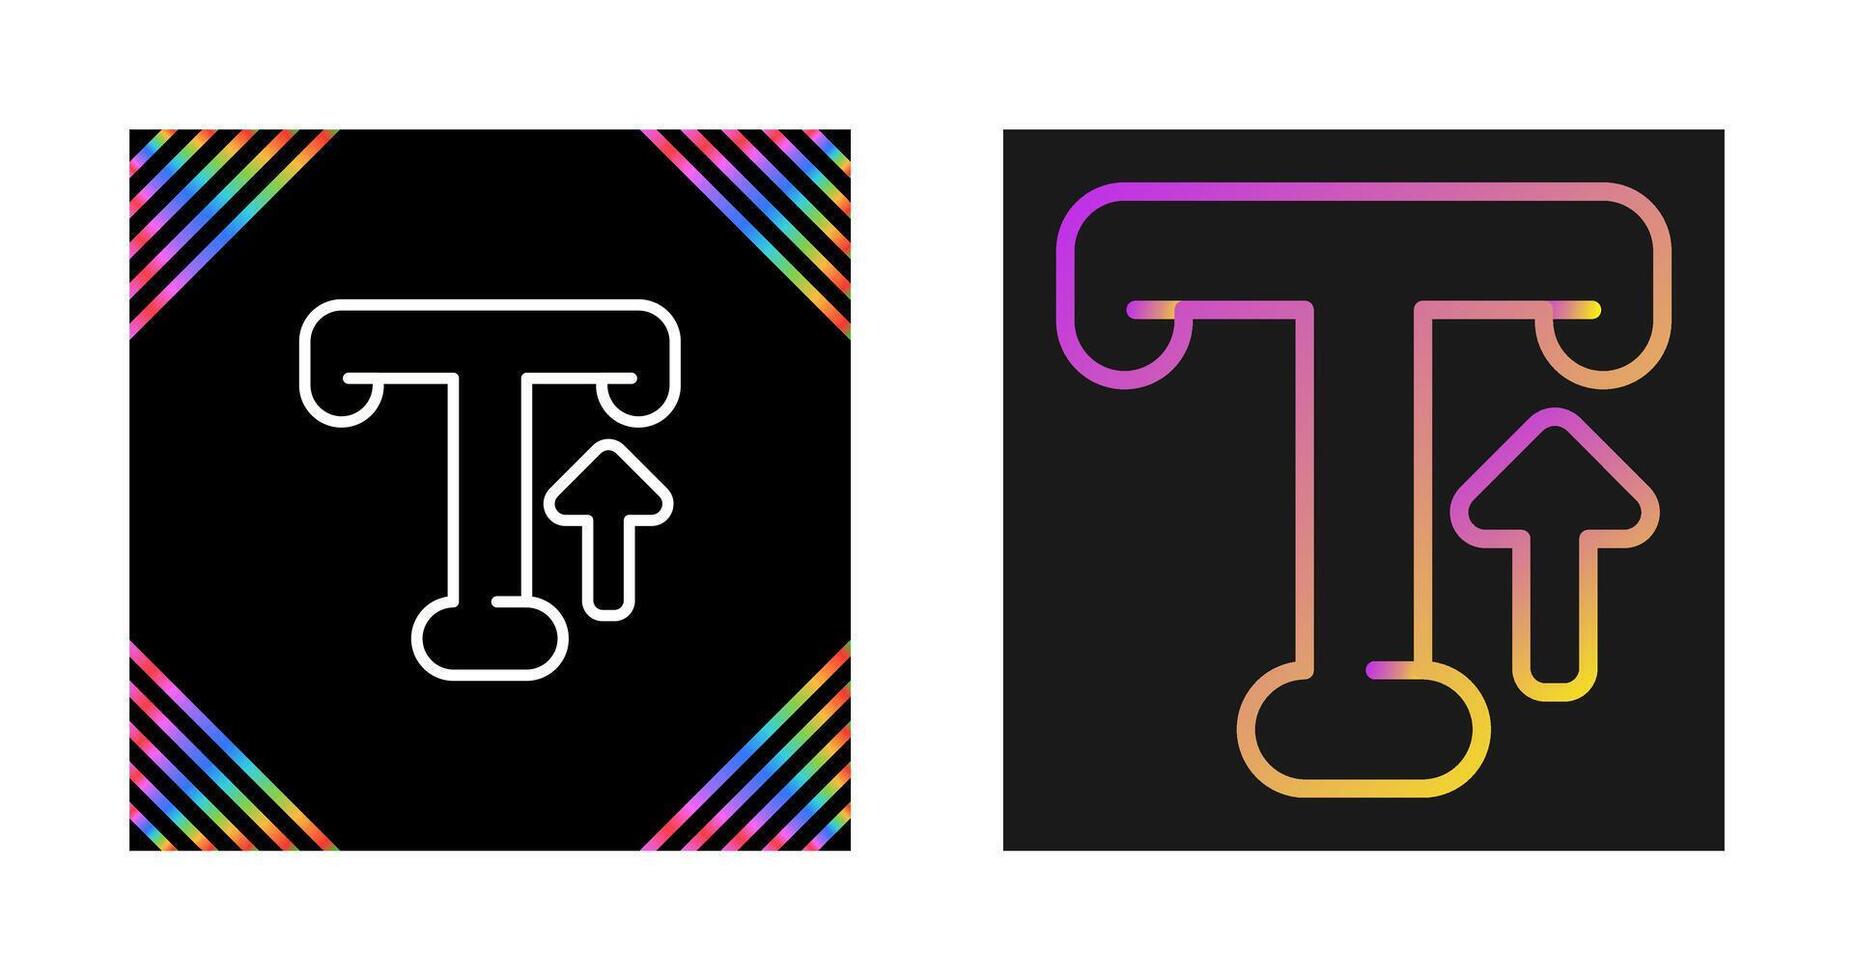 typografi vektor ikon